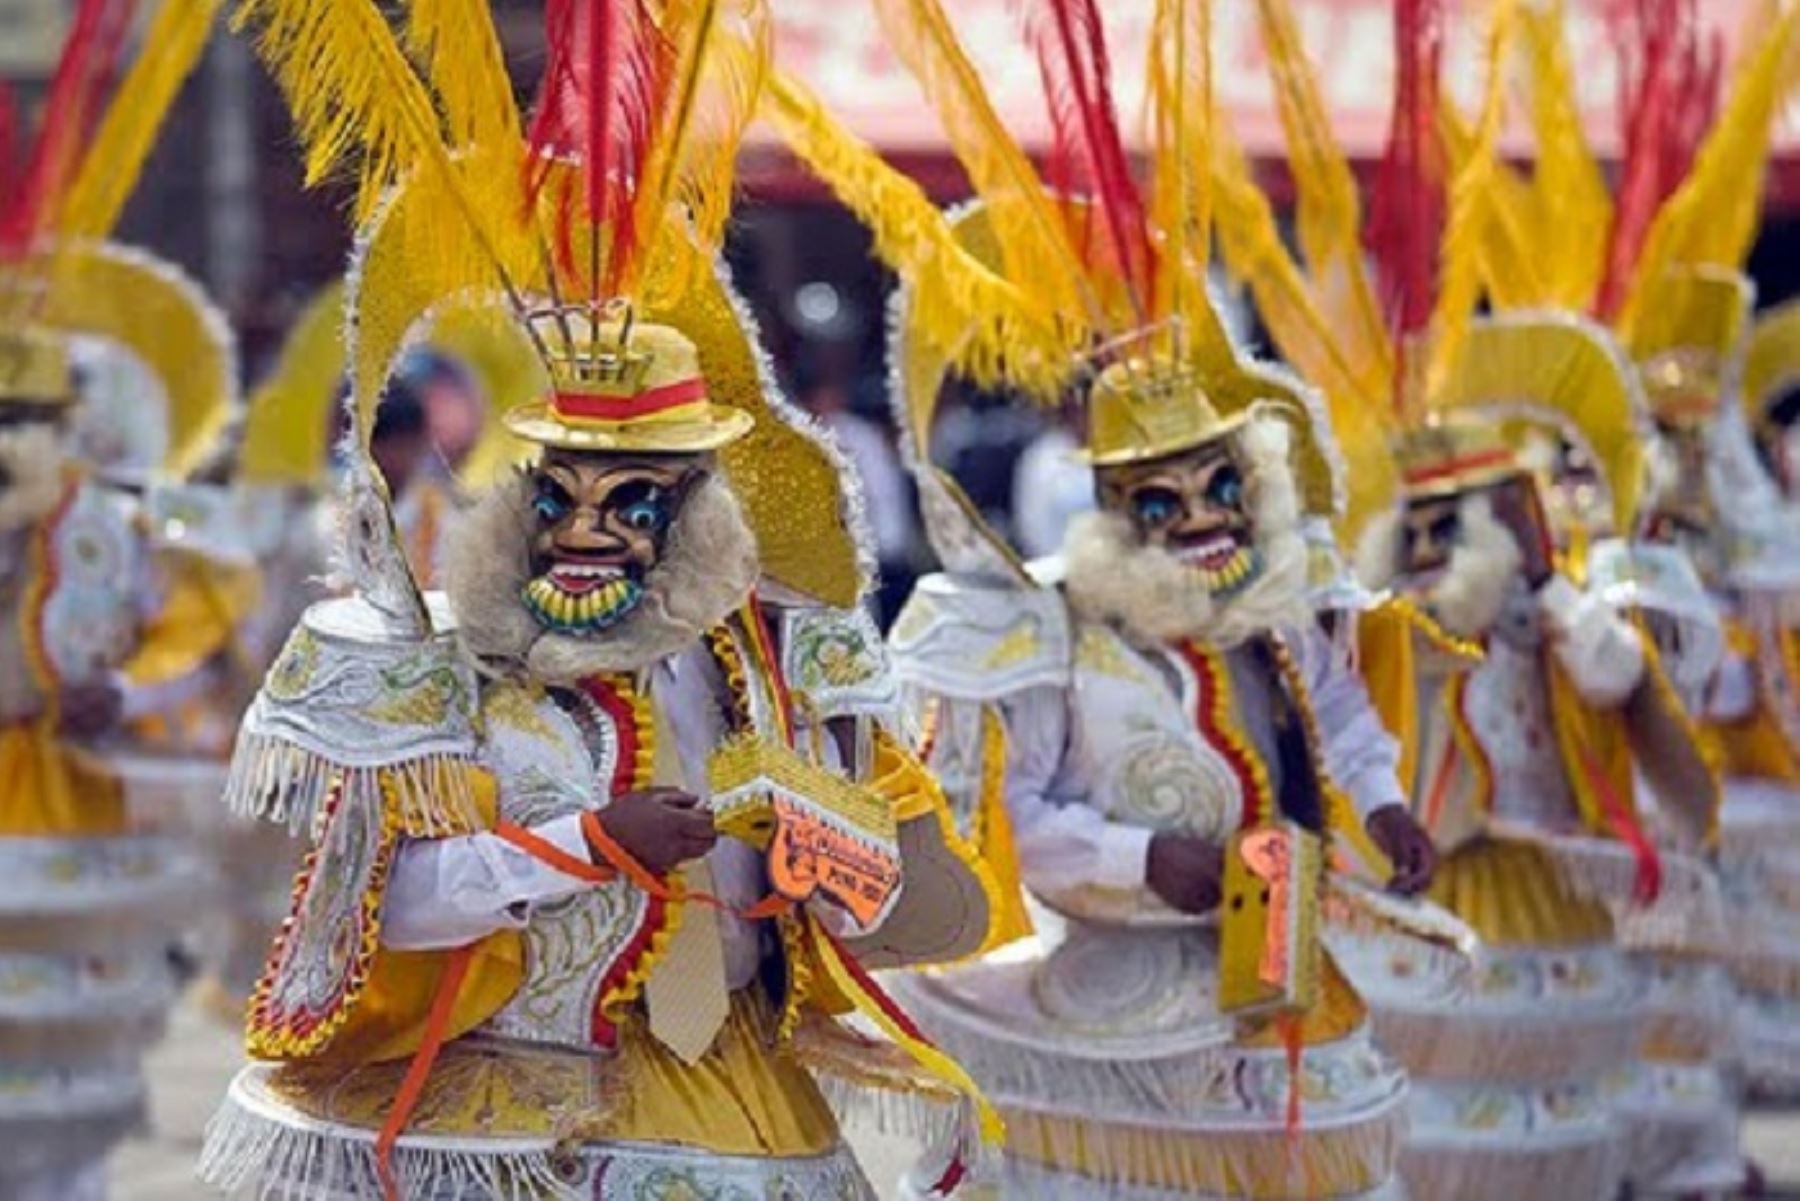 Se denomina Morenada puneña a una expresión coreográfica, de carácter tradicional, propia del altiplano peruano, en la que se destaca la presencia dominante de danzantes ataviados en traje de morenos o sus derivados, reyes morenos y reyes caporales.